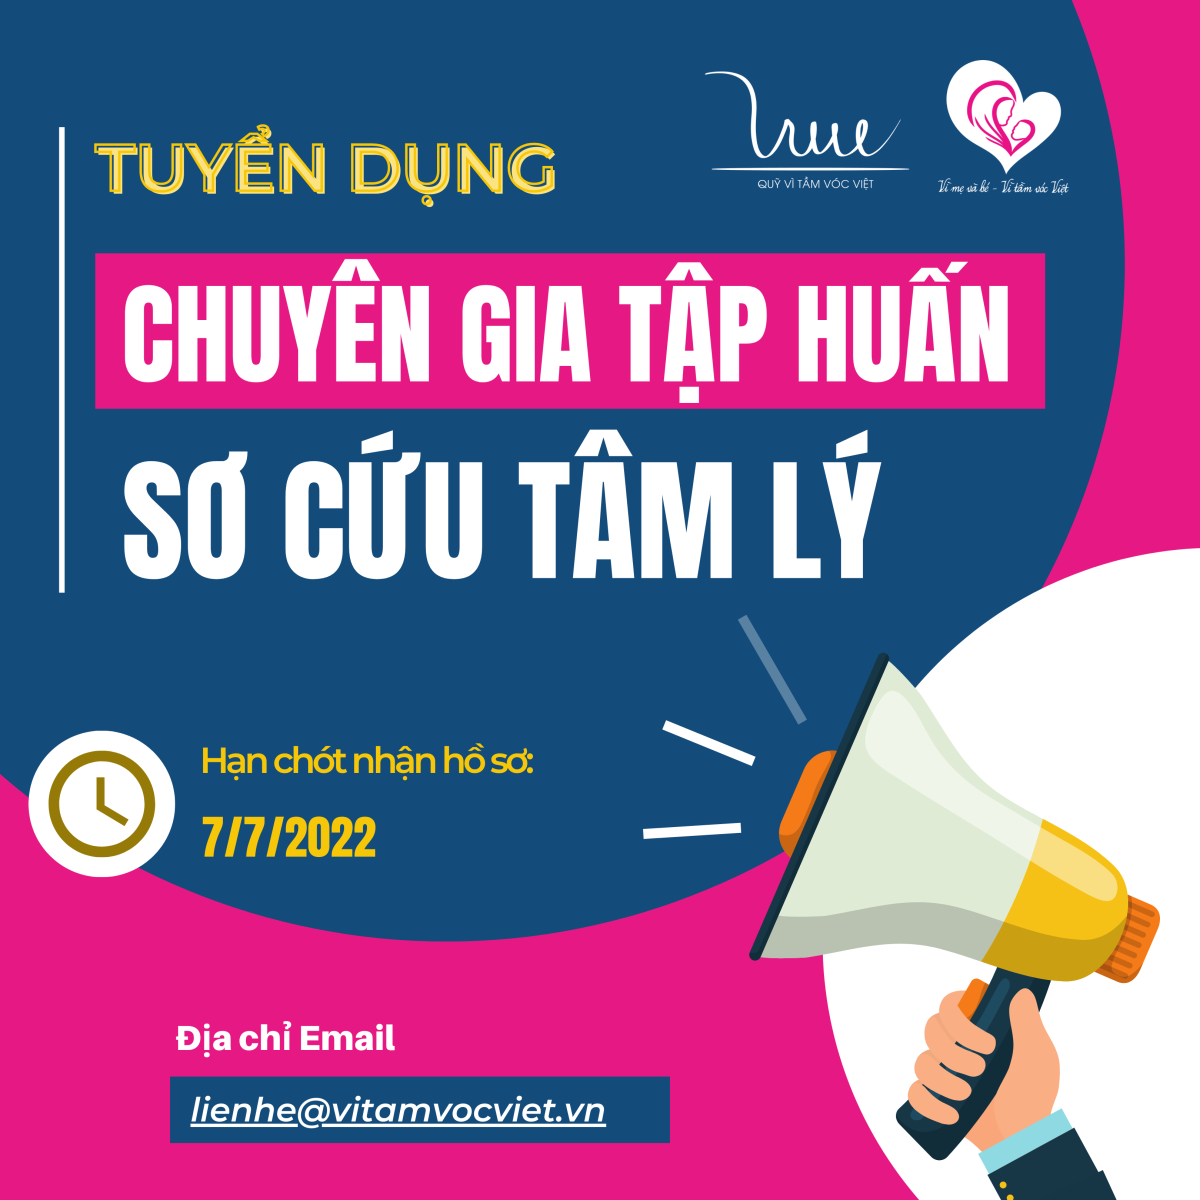 Quỹ Vì Tầm Vóc Việt tuyển dụng CHUYÊN GIA TẬP HUẤN SƠ CỨU TÂM LÝ (Hạn chót nhận hồ sơ: 7/7/2022)